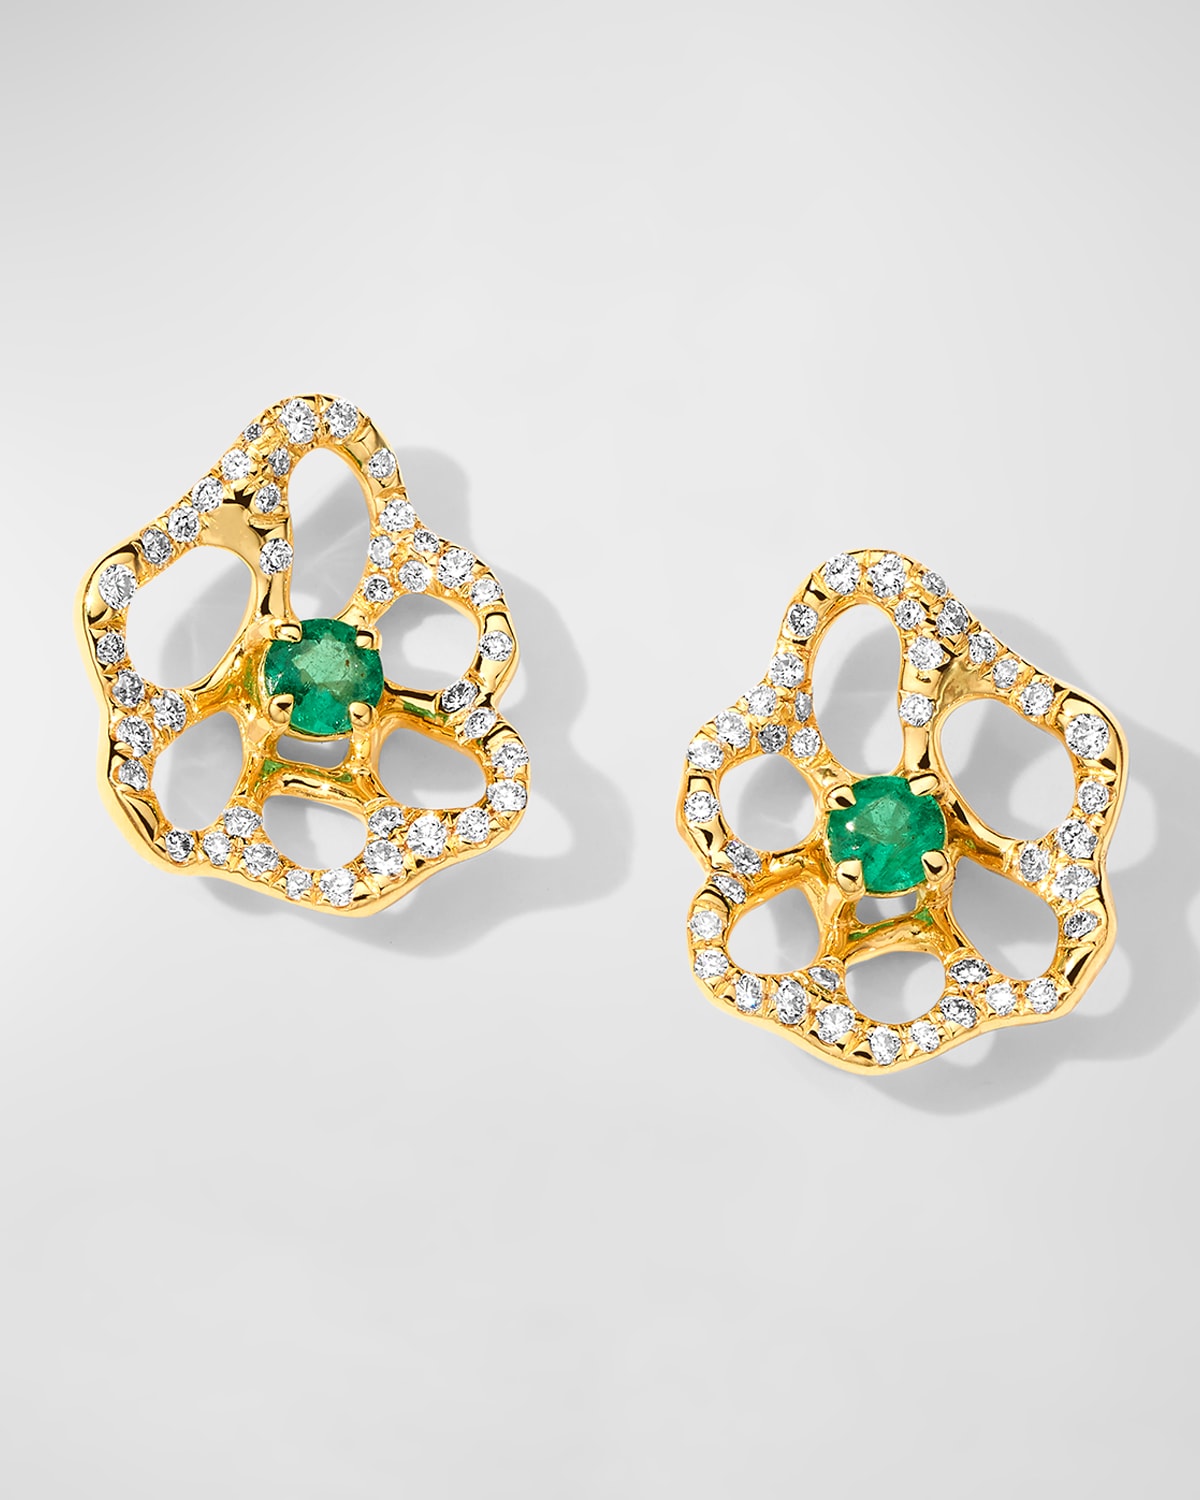 Ippolita Women's Stardust 18k Yellow Gold, Emerald & 0.3 Tcw Diamond Flower Stud Earrings In Green Emerald